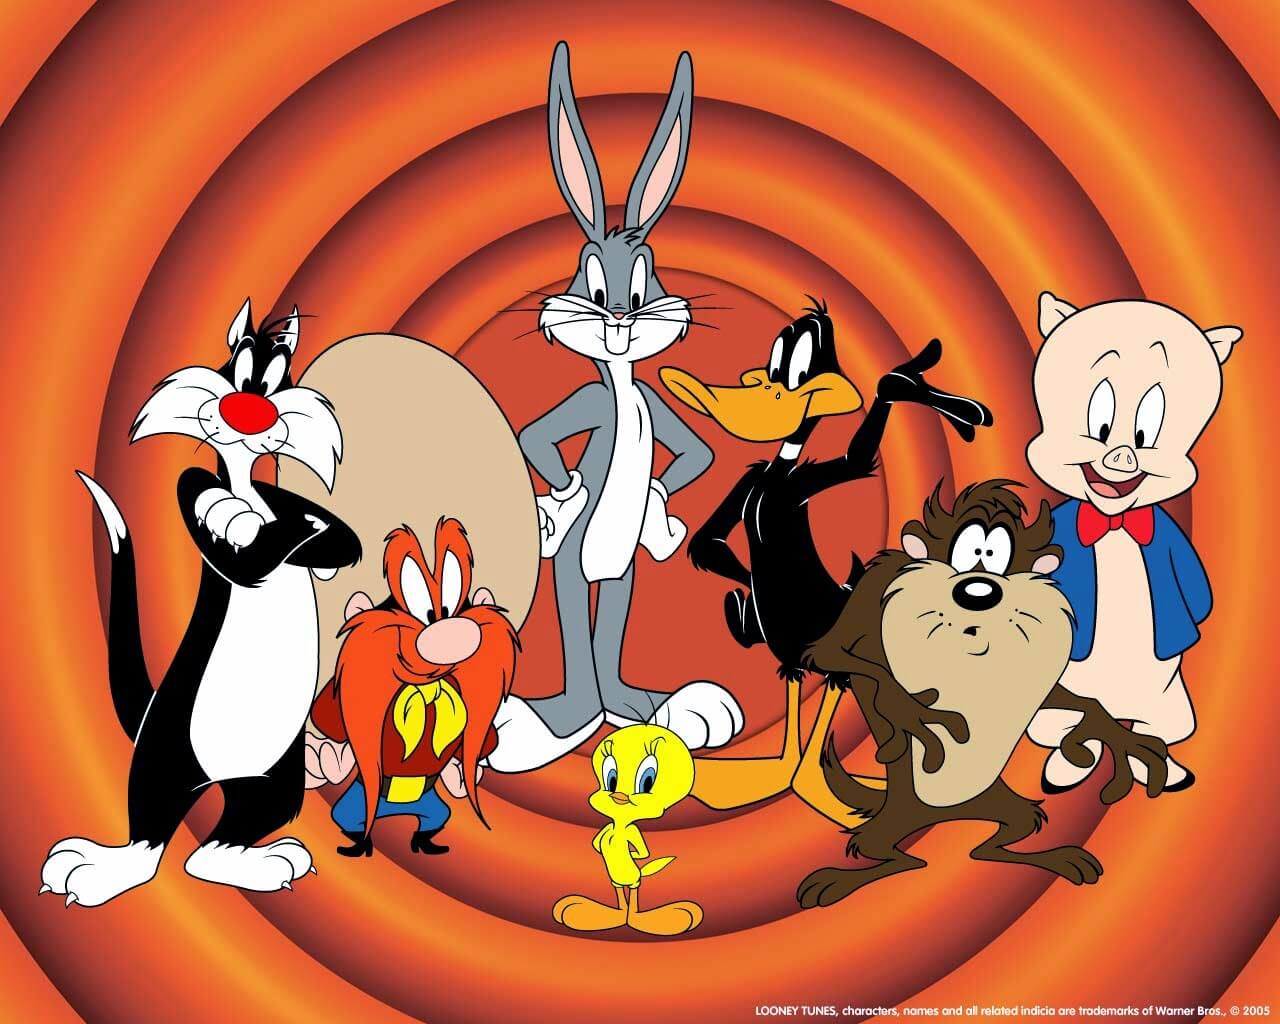 Personaggi Looney Tunes, incluso il gatto bianco e nero noto come Sylvester.